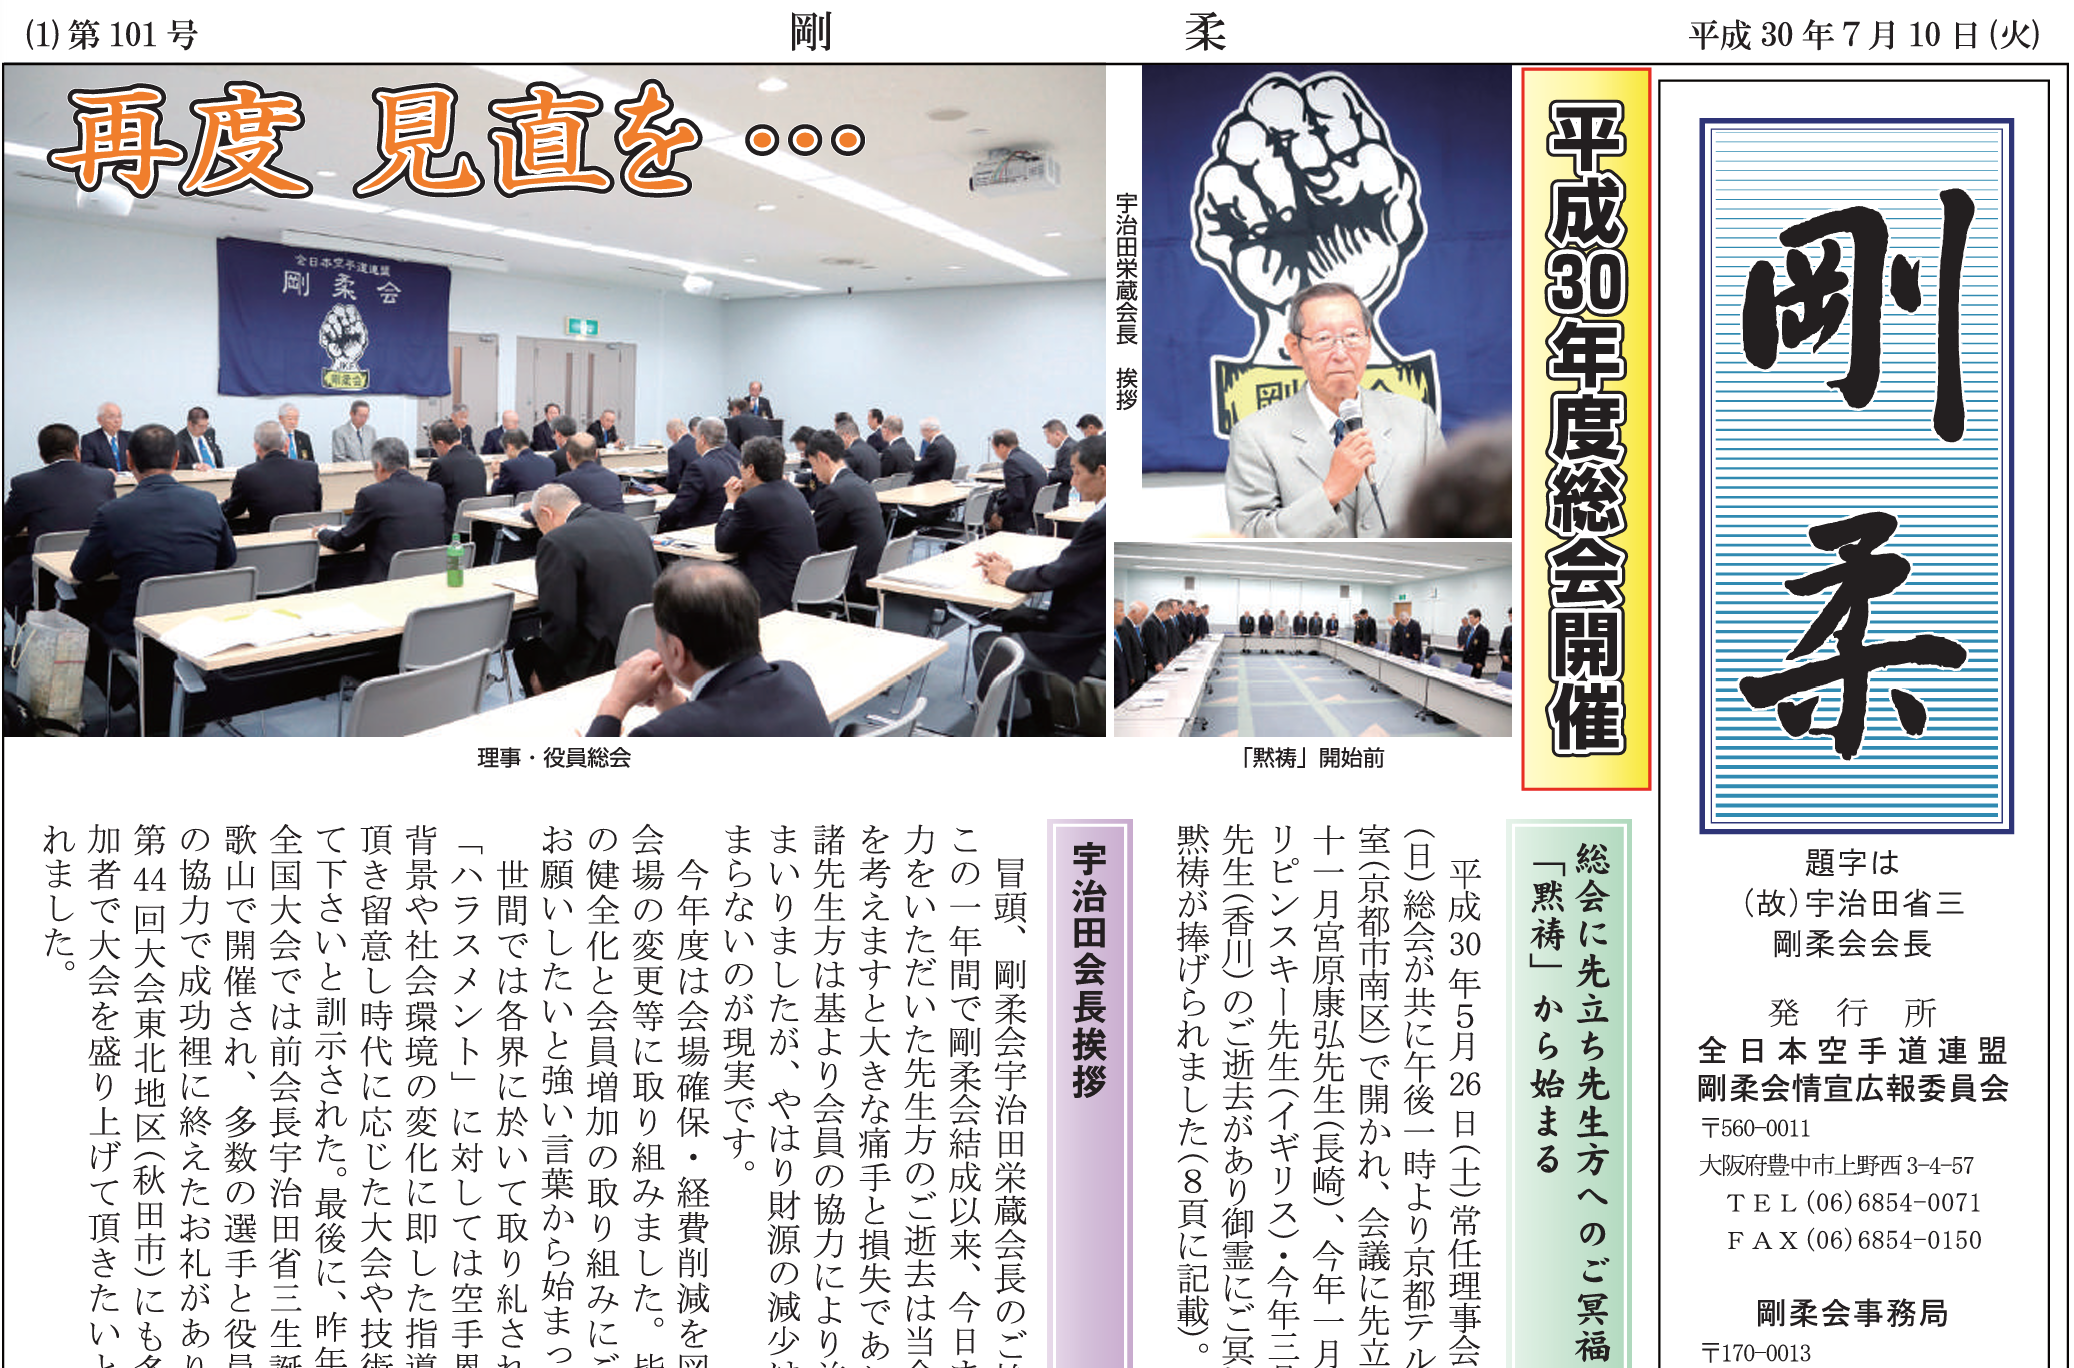 JKF Gojukai Newsletter Kaihoshi November 2022 cover